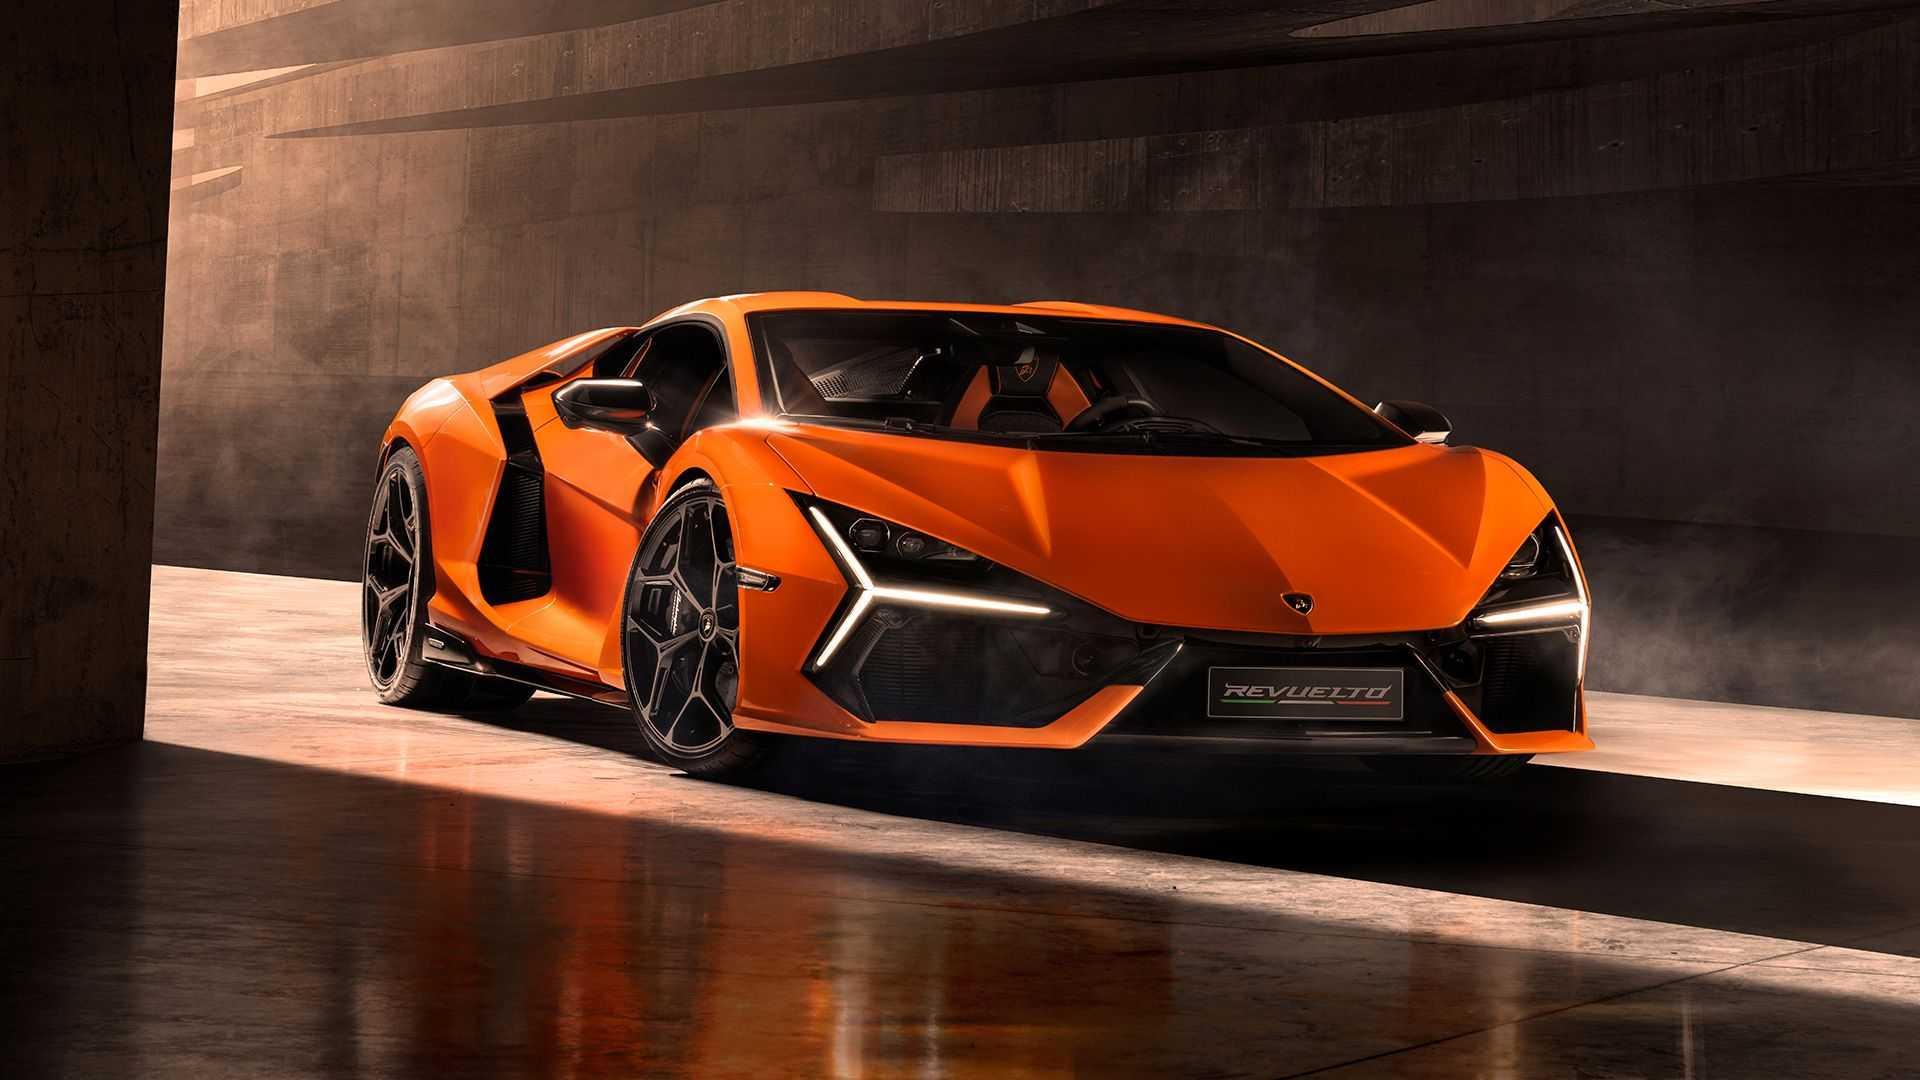 Lamborghini revuelto 100879517 h